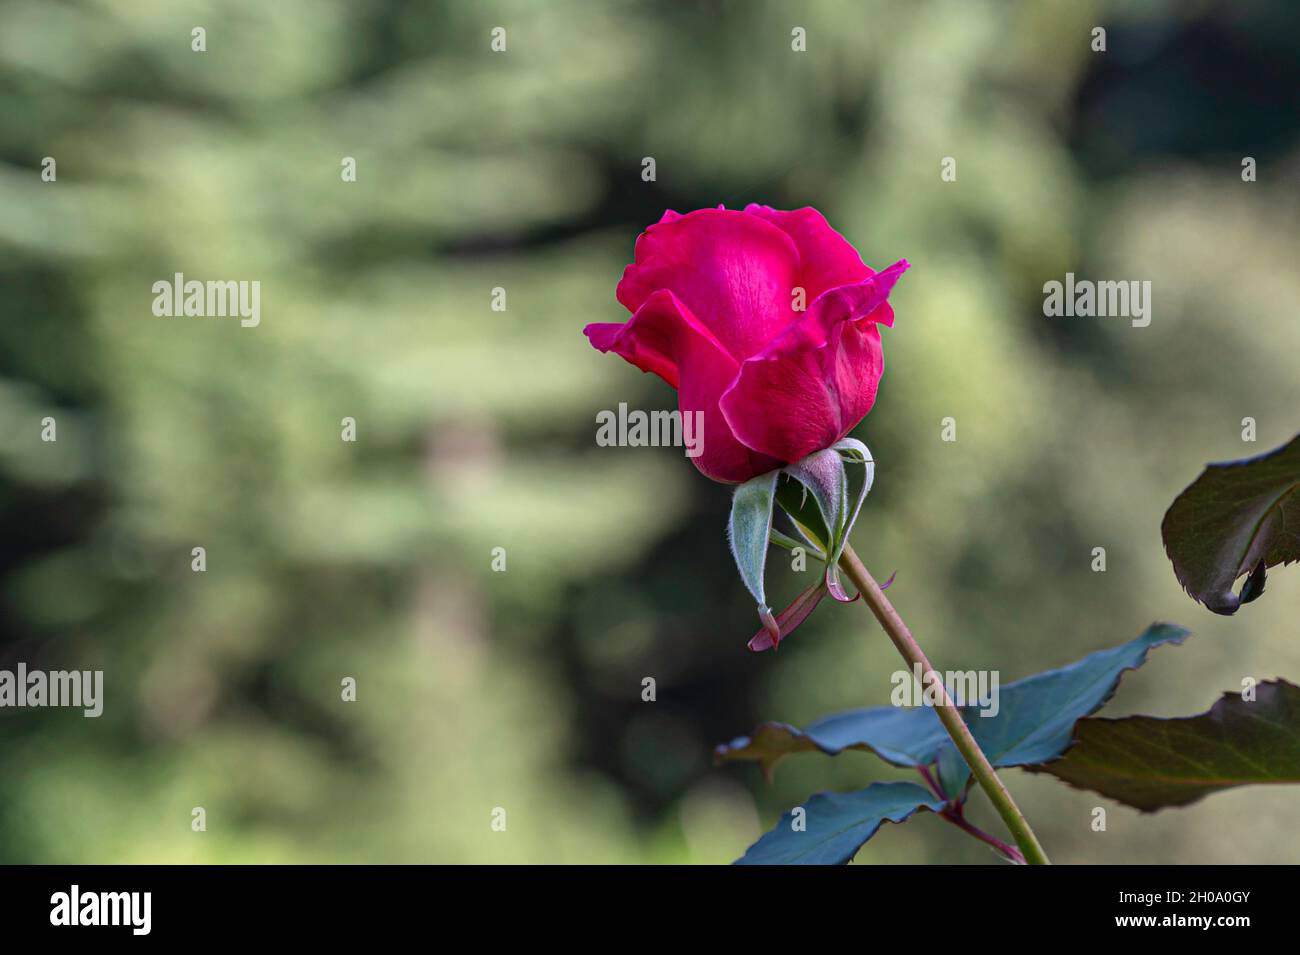 Immagini Stock - Boccioli Di Rosa Essiccati In Giardino In Una Giornata Di  Sole. Image 166066332